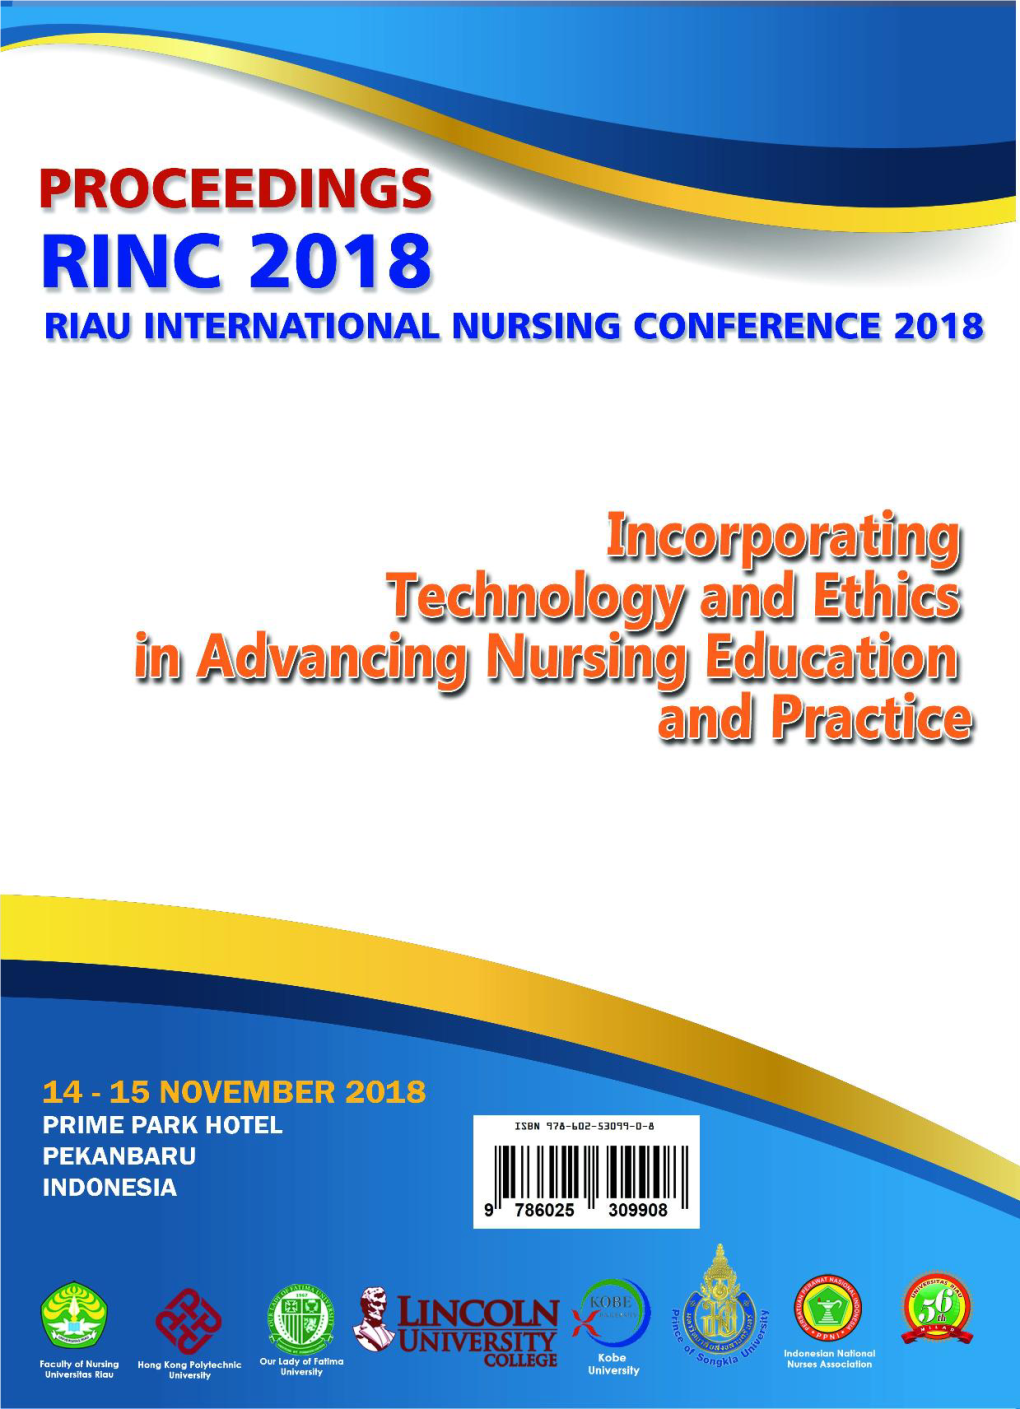 Proceedings-RINC2018.Pdf